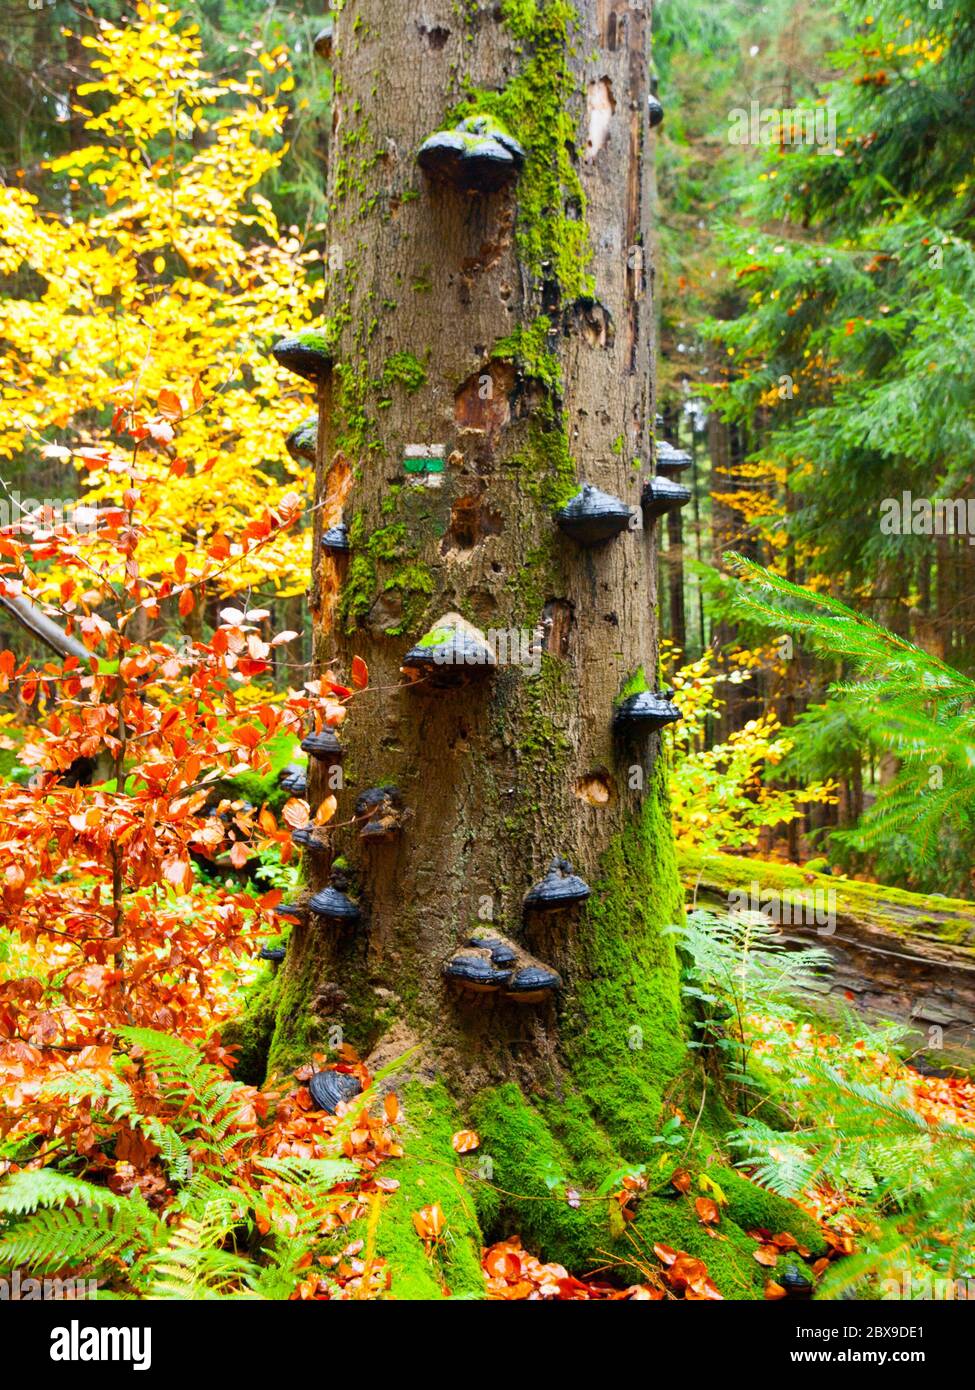 Funghi polypores su un tronco di albero in colorata foresta primordiale autunno. Foto Stock